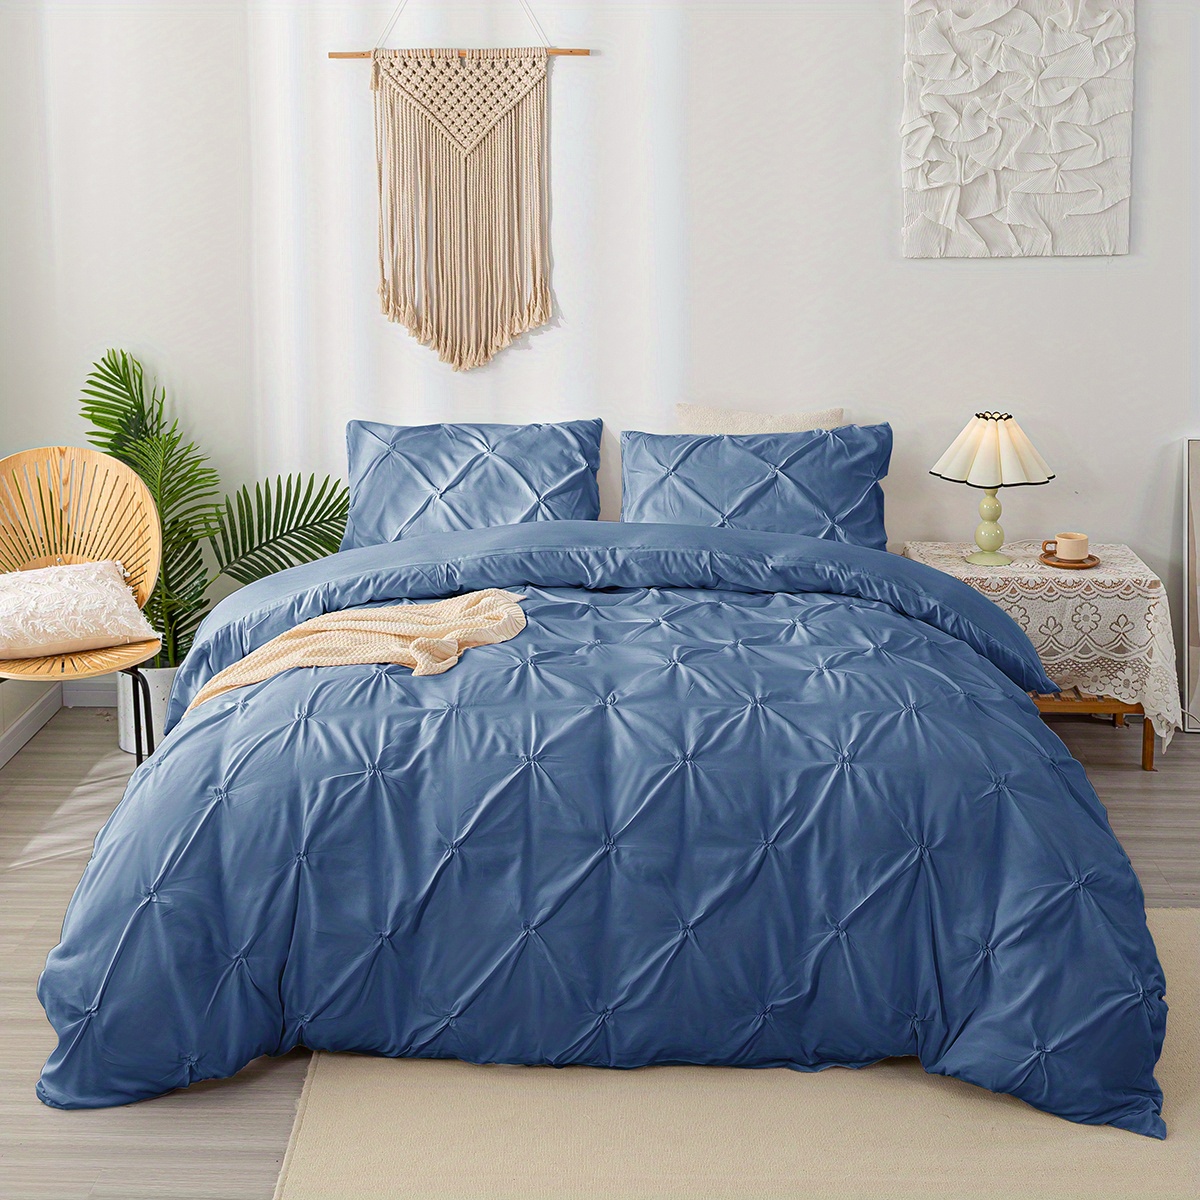 Juego de ropa de cama 3 piezas, cobertor acolchonado tamaño Queen de  algodón. Azul y blanco.